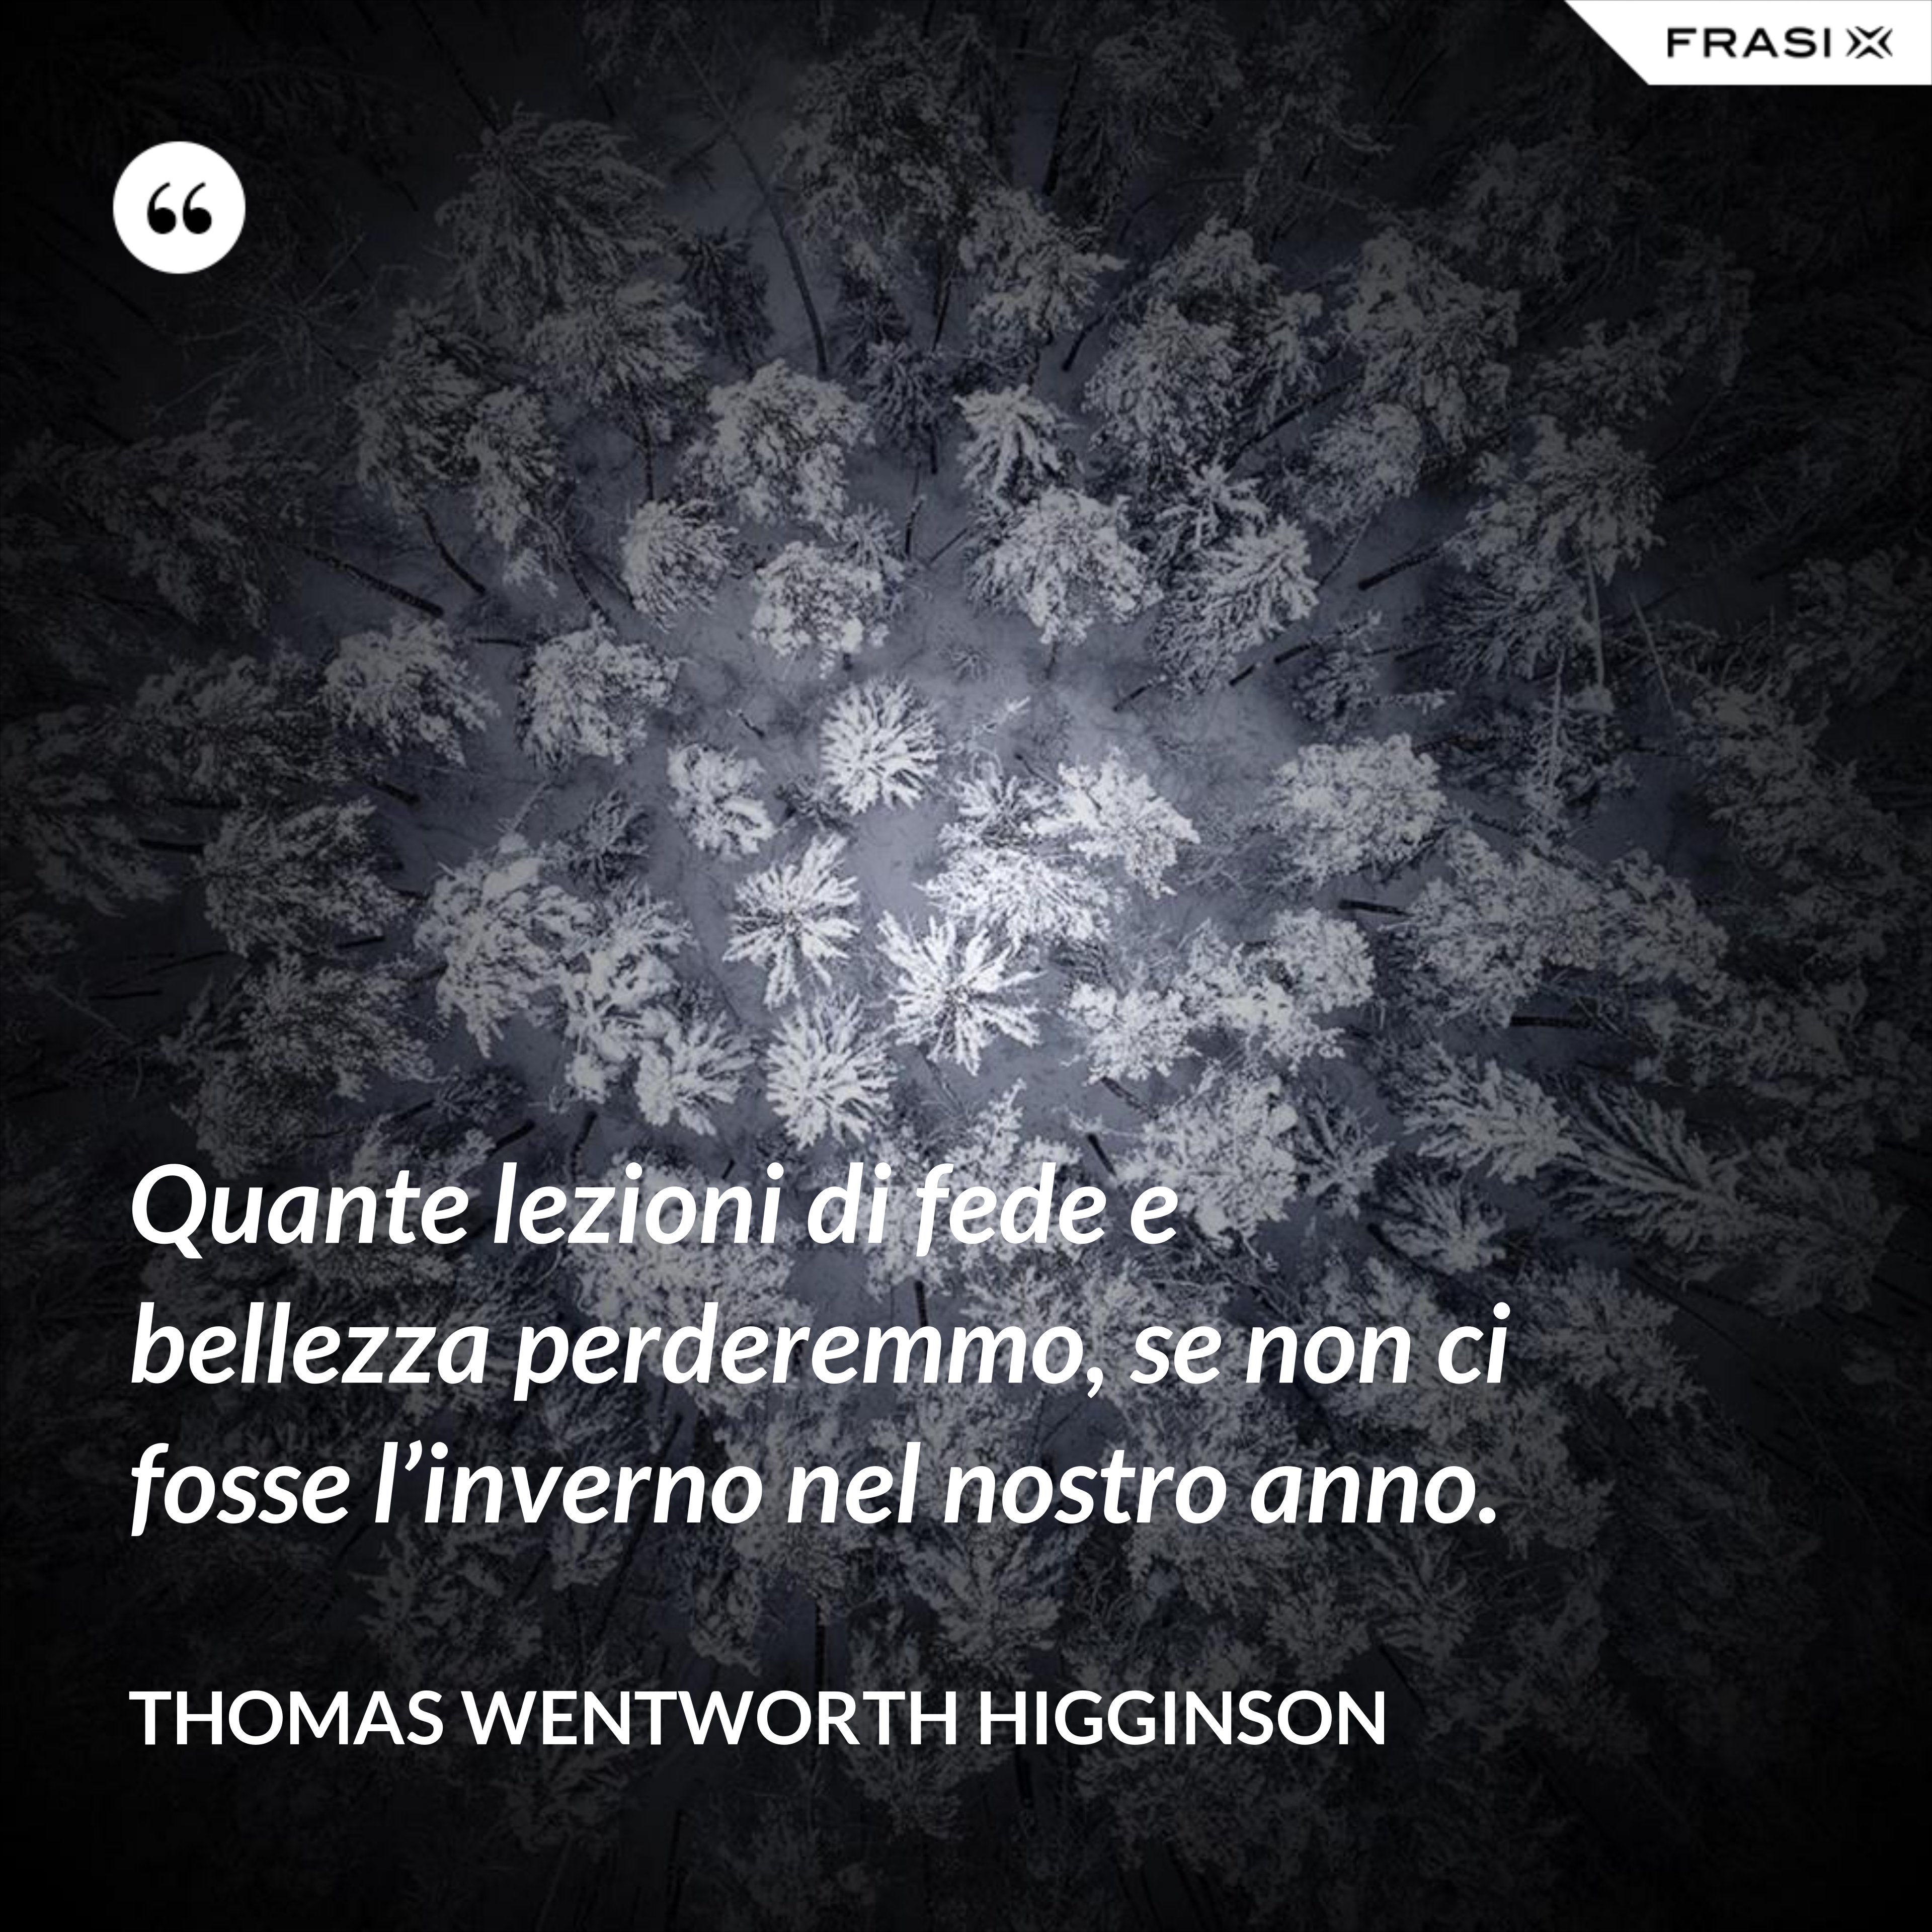 Quante lezioni di fede e bellezza perderemmo, se non ci fosse l’inverno nel nostro anno. - Thomas Wentworth Higginson